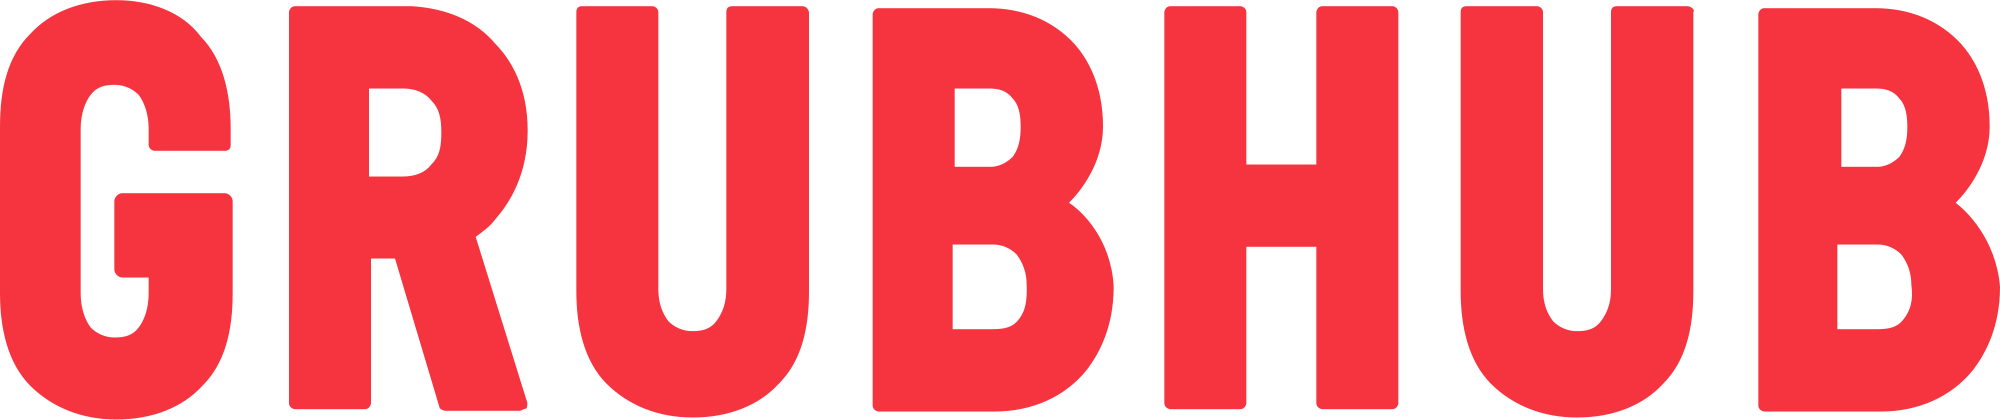 Grubhub Logo PNG Image